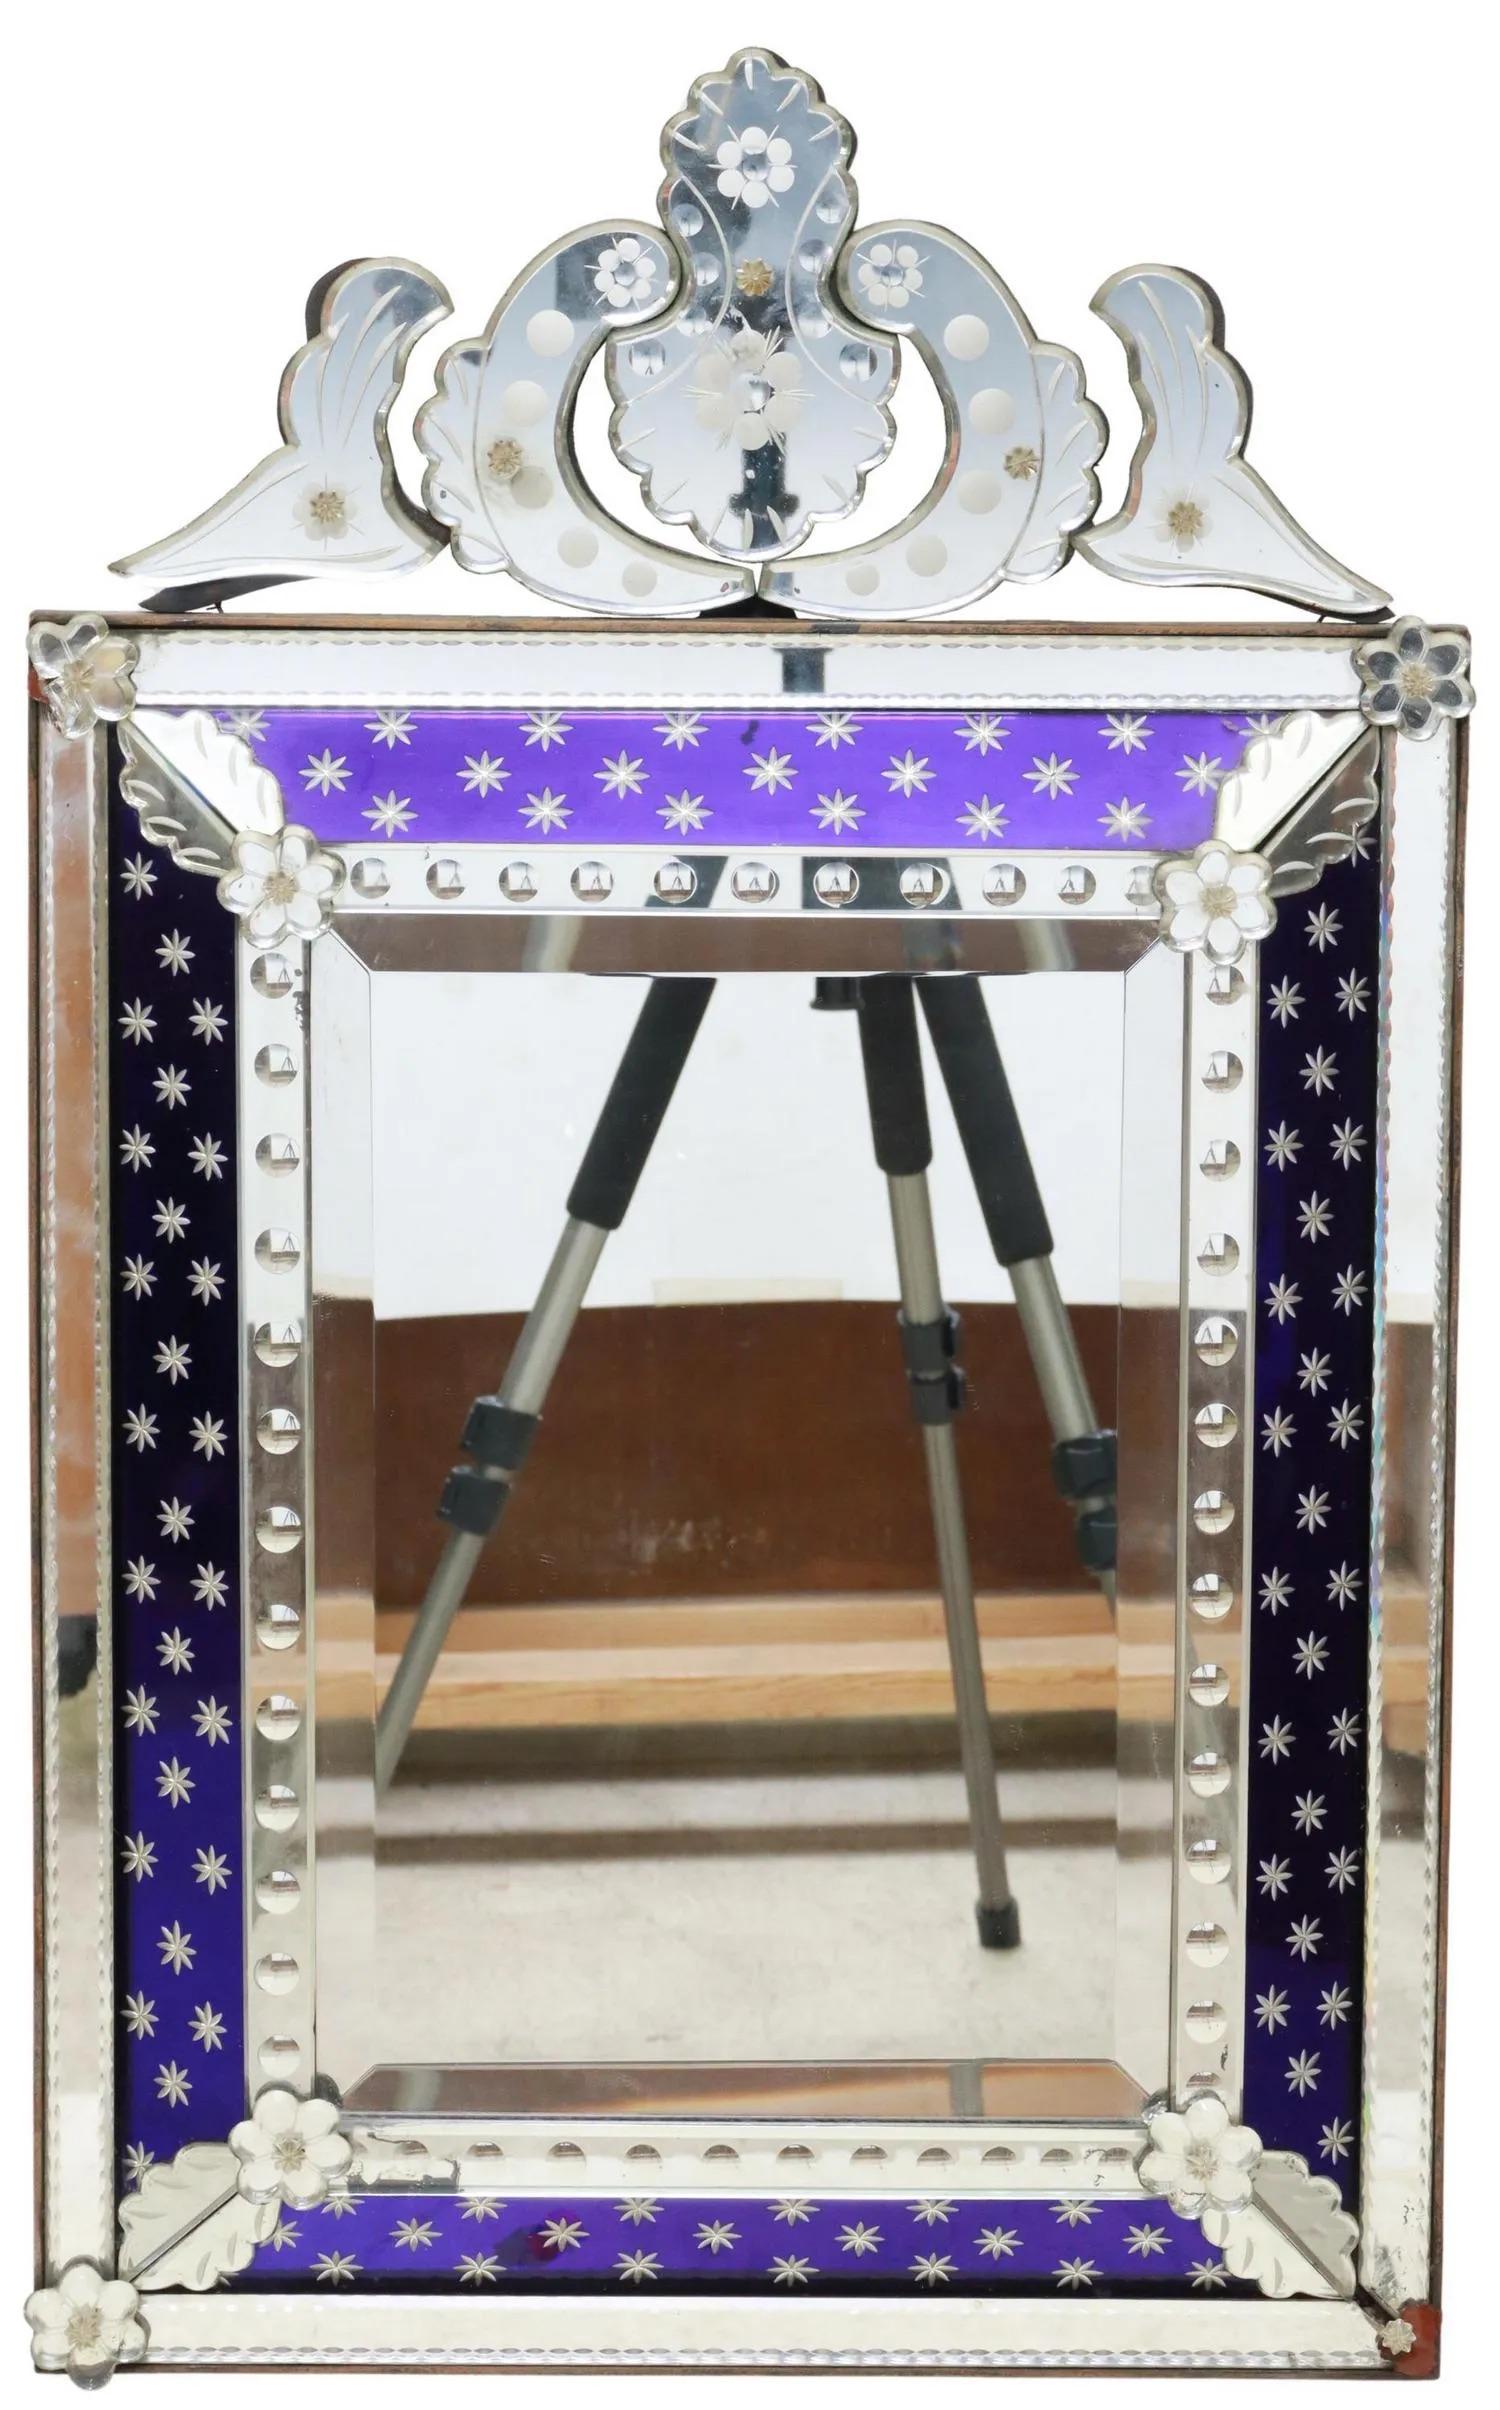 Spiegel im venezianischen Stil, Ende 20. Jh., geätztes Wappen, kobaltblauer Glasrand, abgeschrägte Spiegelplatte, Verluste an den Eckrosetten. 

Abmessungen: ca. 31 